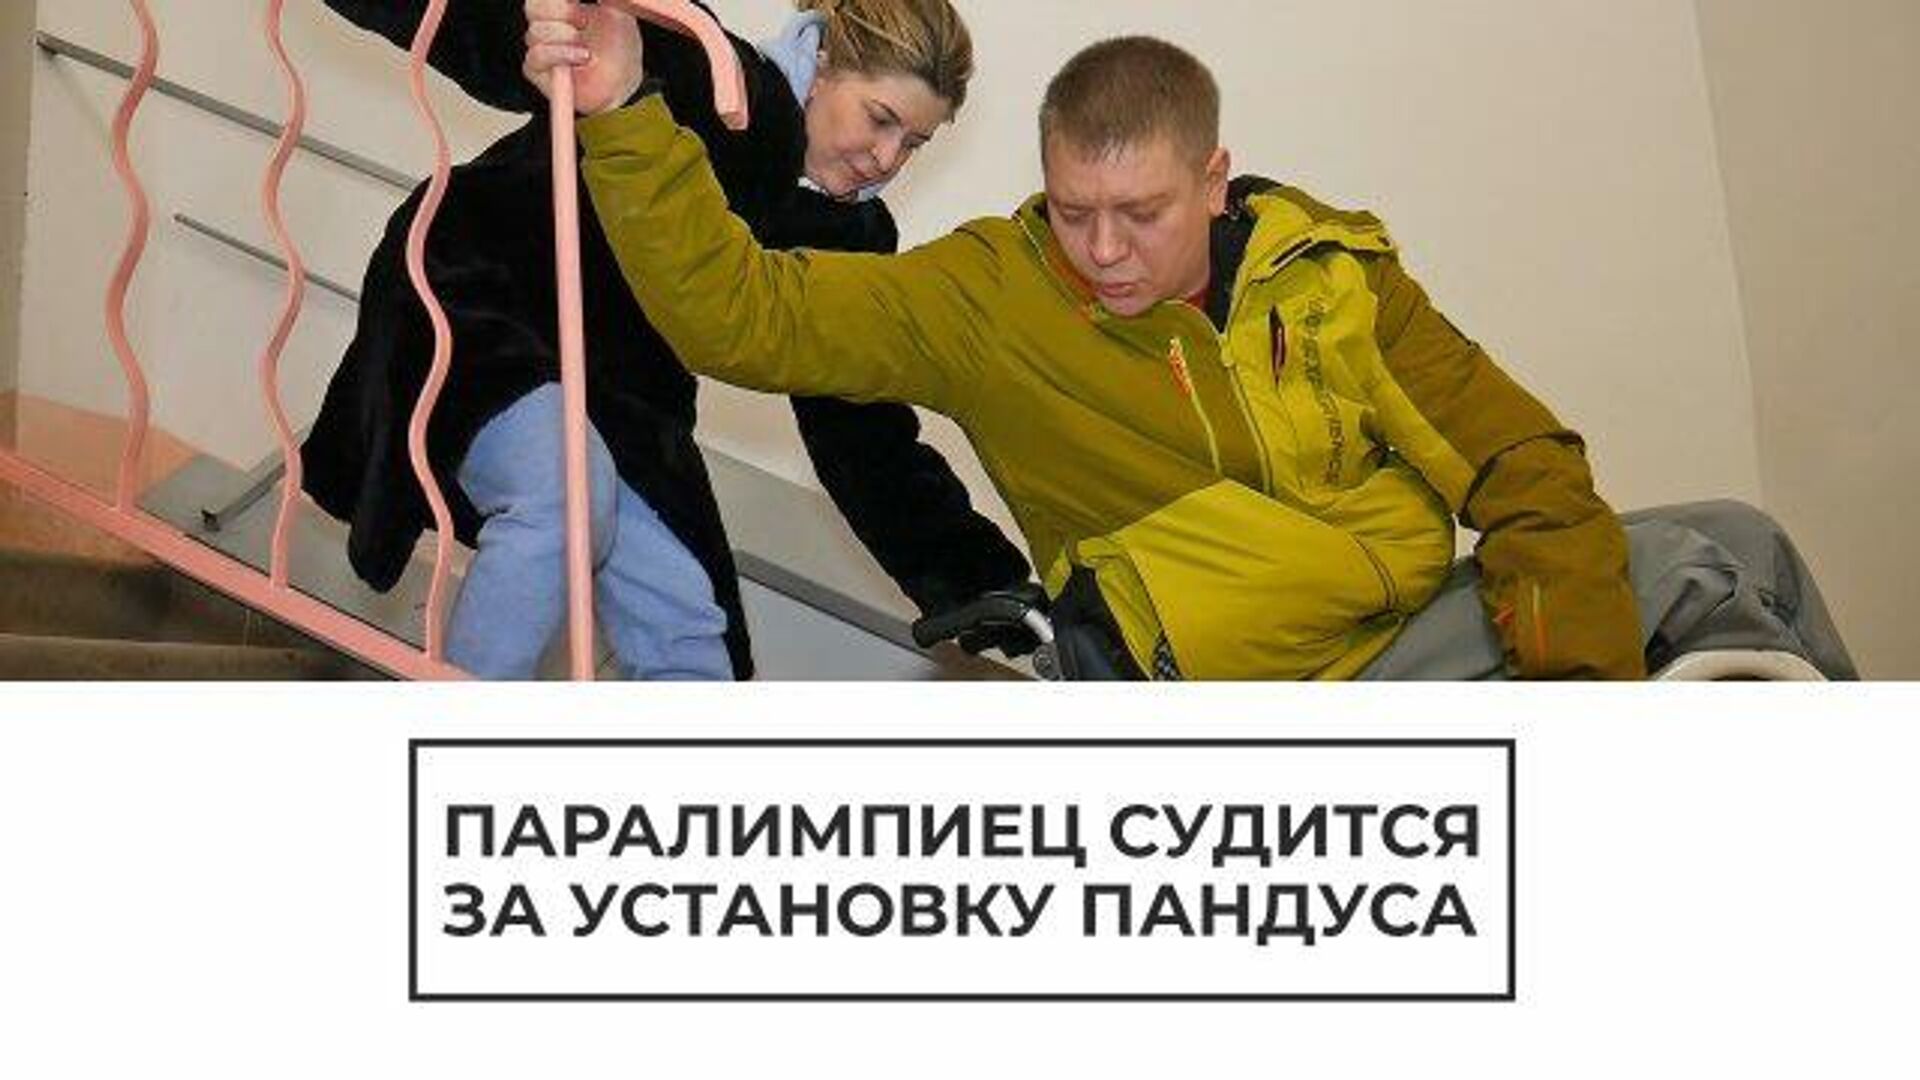 Ступенькоход вместо пандуса: паралимпиец судится за доступное жилье - РИА Новости, 1920, 24.02.2021